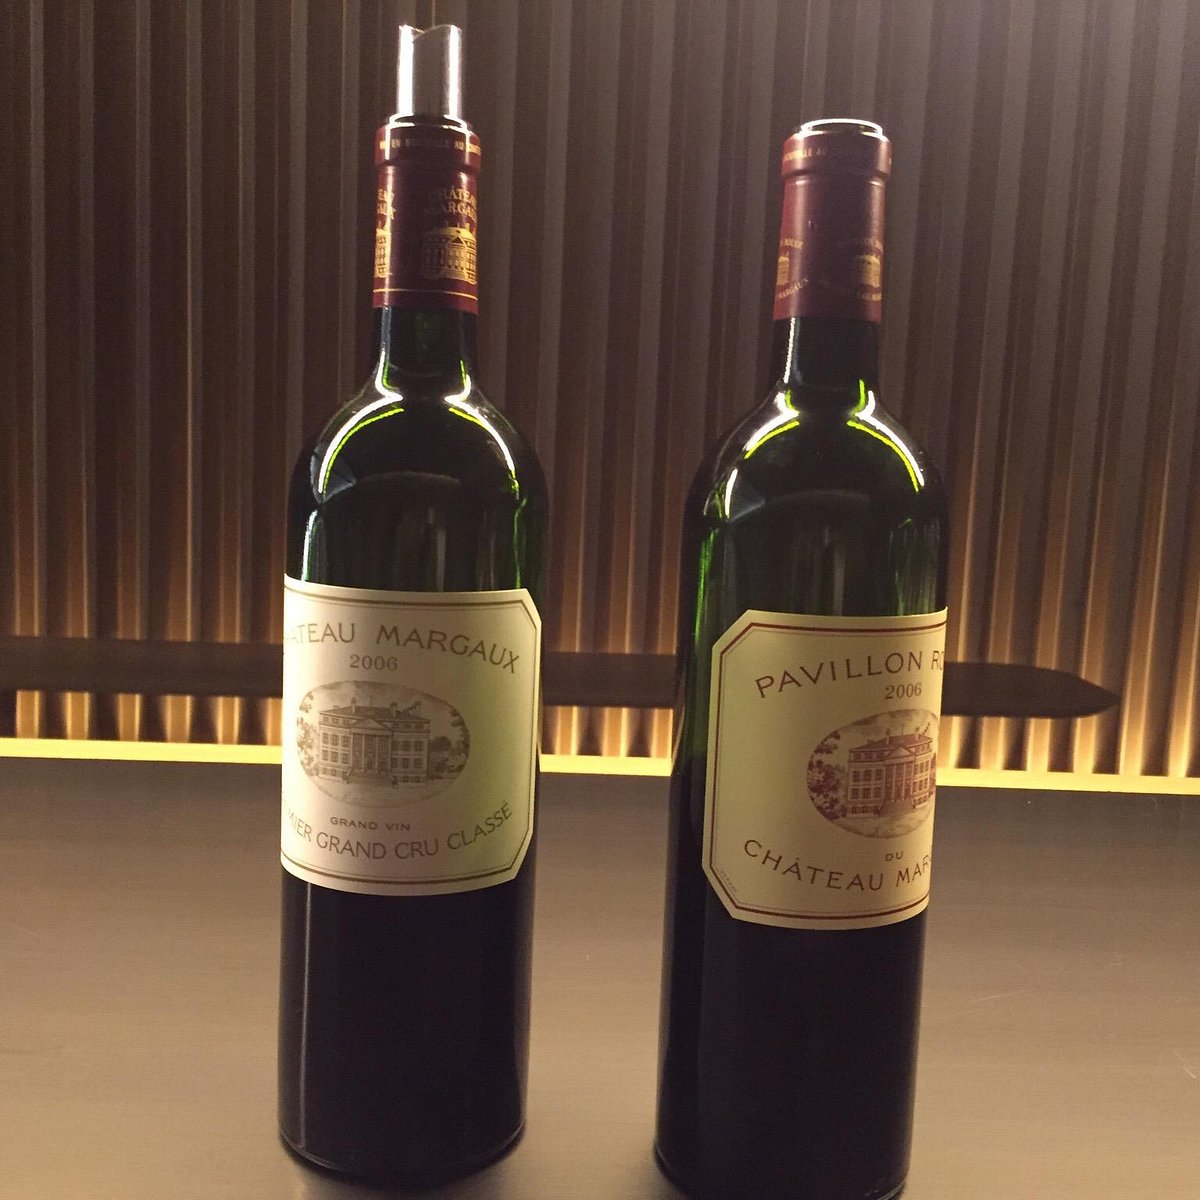 chateau margaux - Te decimos los mejores vinos del mundo